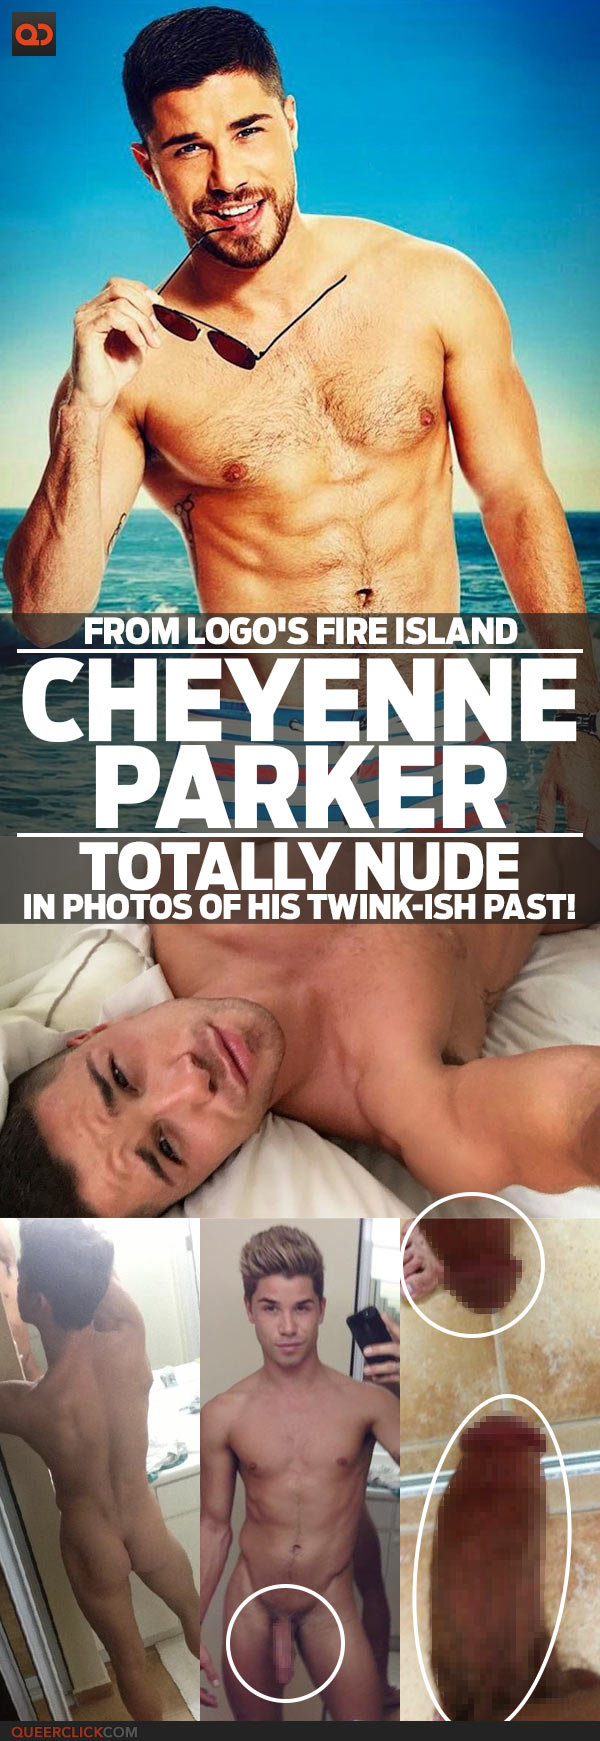 charleen watt share cheyenne parker nude photos